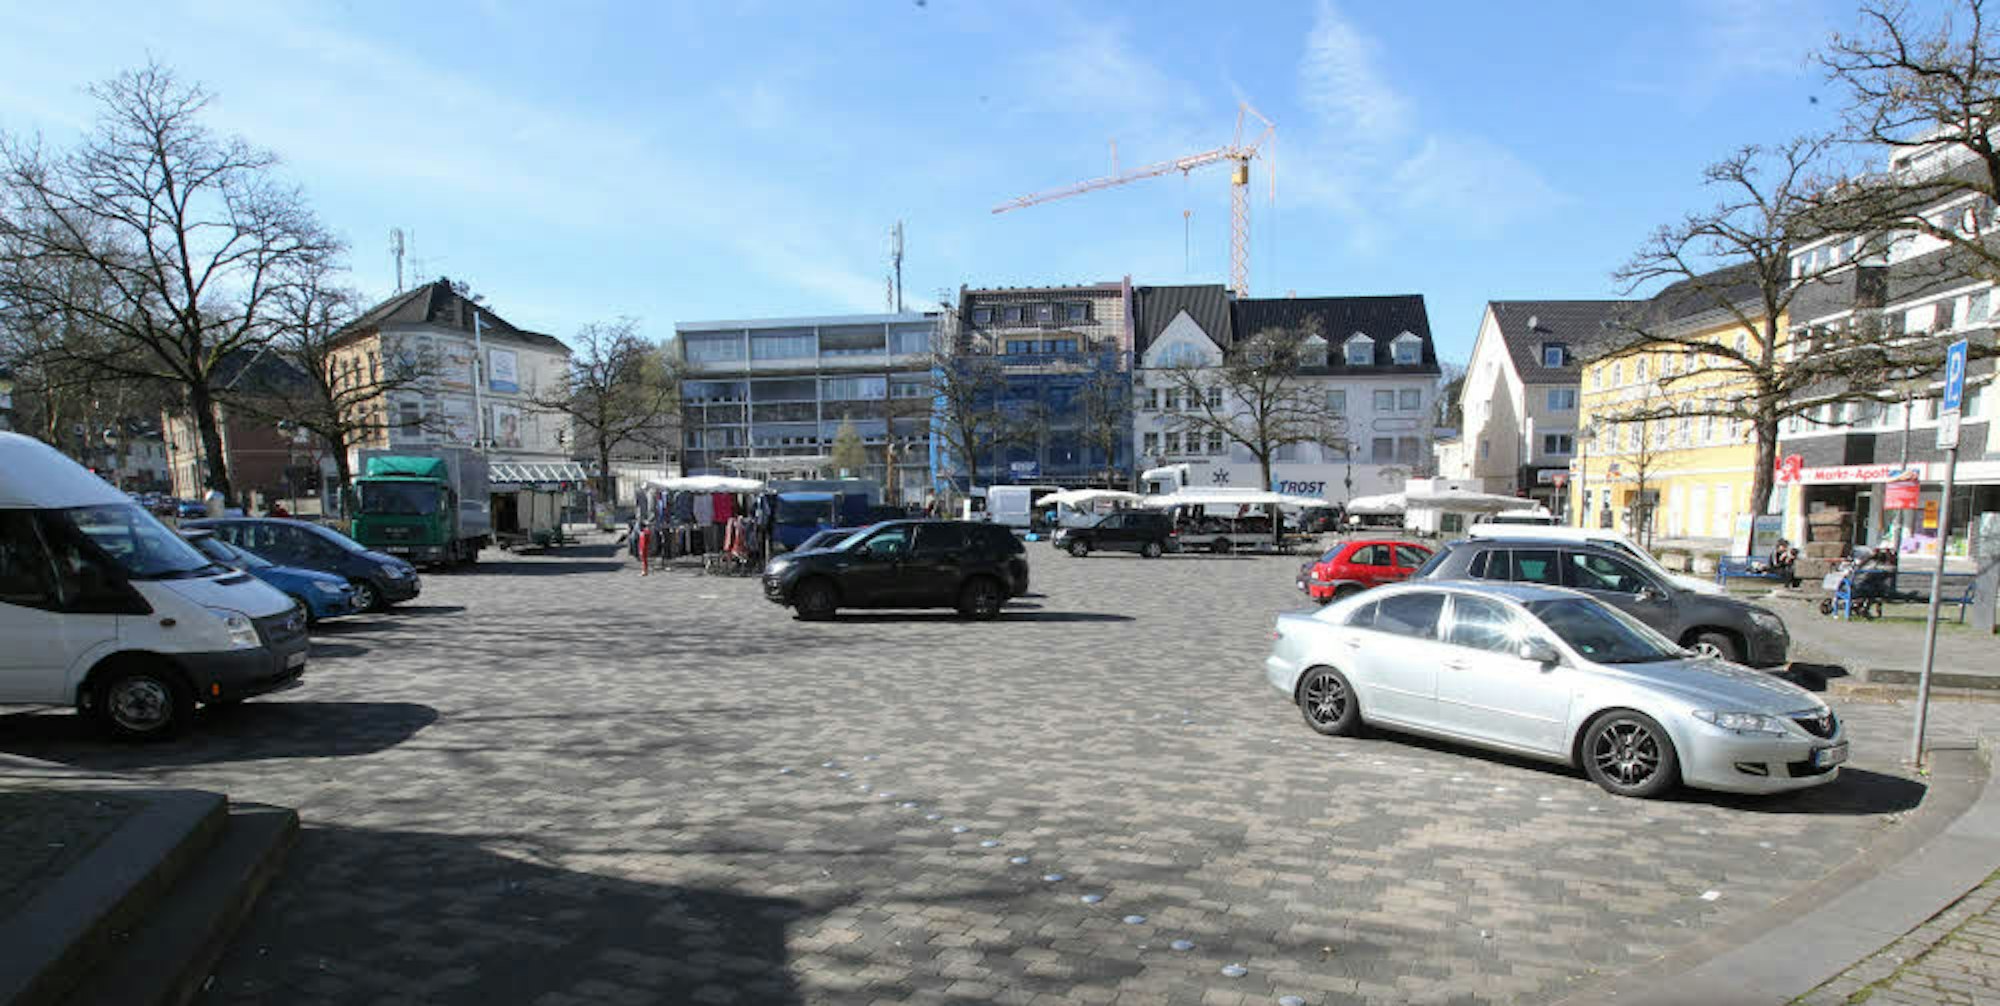 Die Eitorfer Bürger entscheiden vom 3. bis 16. Juni, ob weiterhin Autos auf dem Marktplatz parken dürfen.